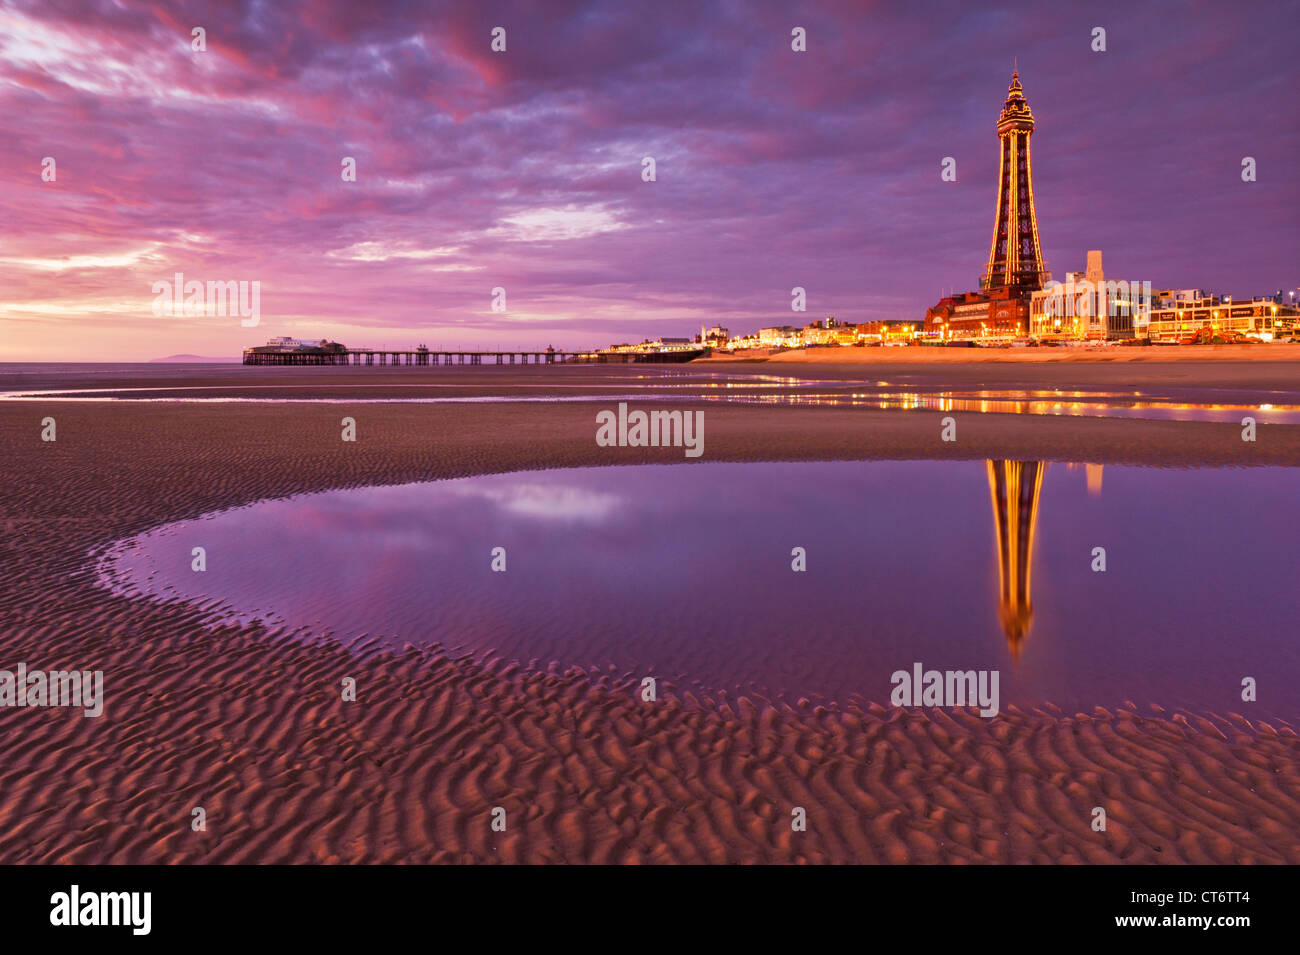 La tour de Blackpool se reflète dans une piscine à marée et des divertissements en bord de mer illuminés au coucher du soleil Lancashire Angleterre GB Royaume-Uni Europe Banque D'Images